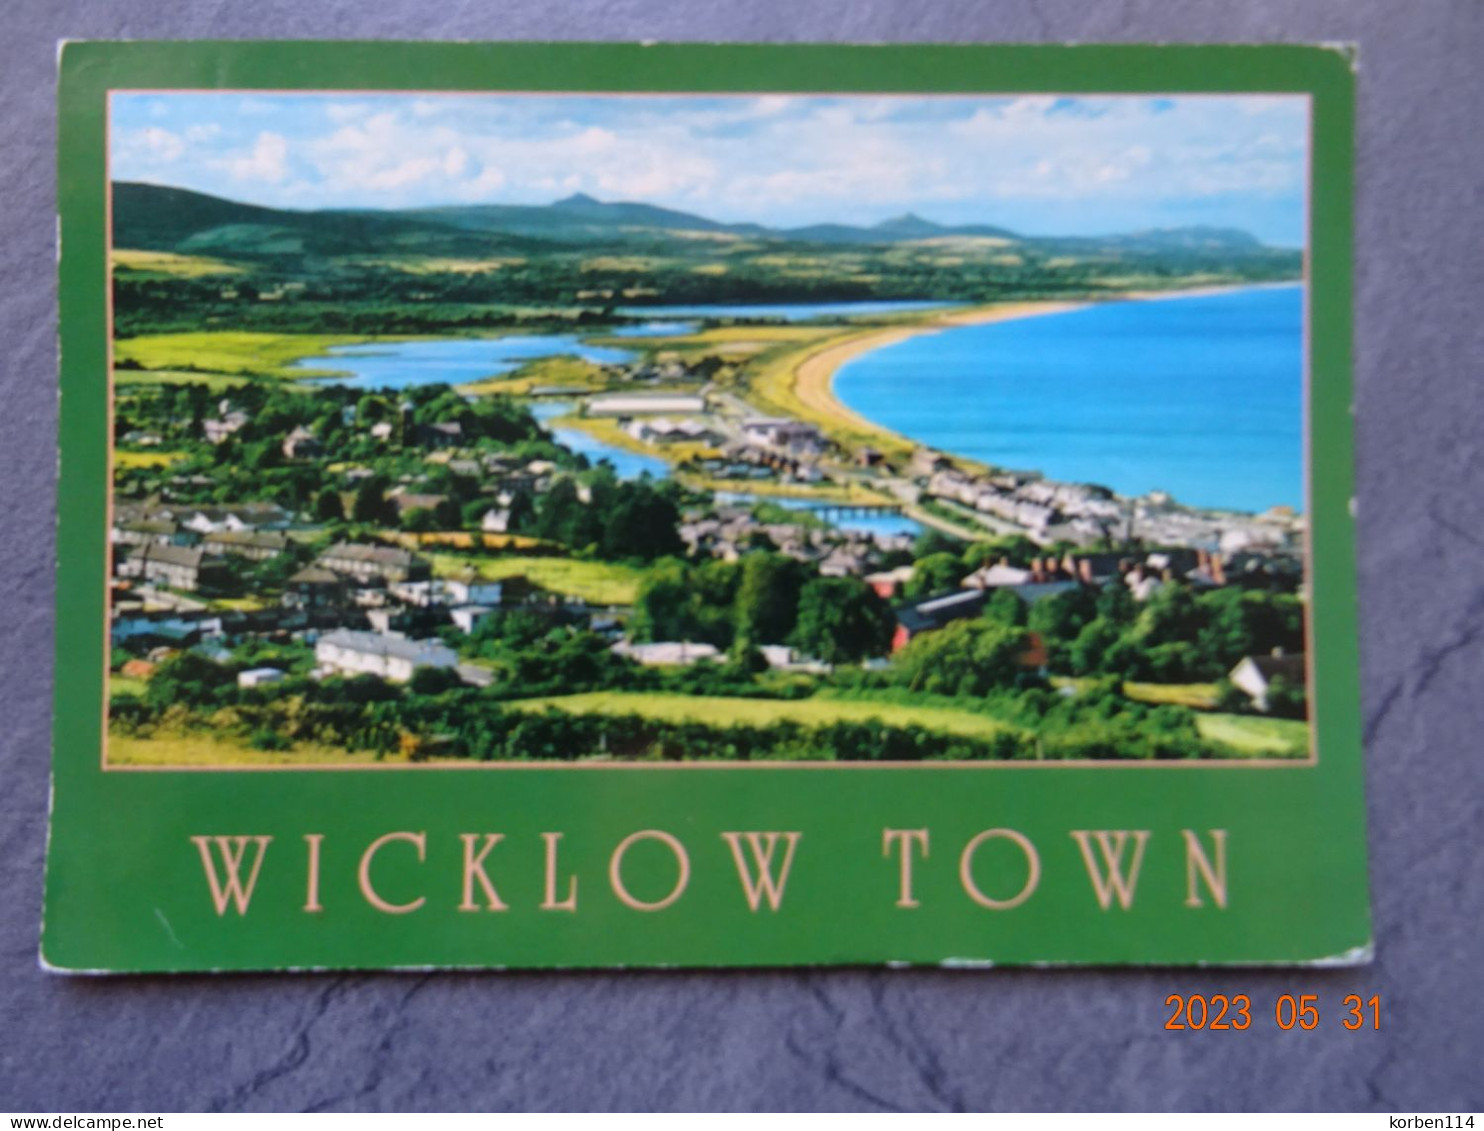 WICKLOW TOWN - Wicklow